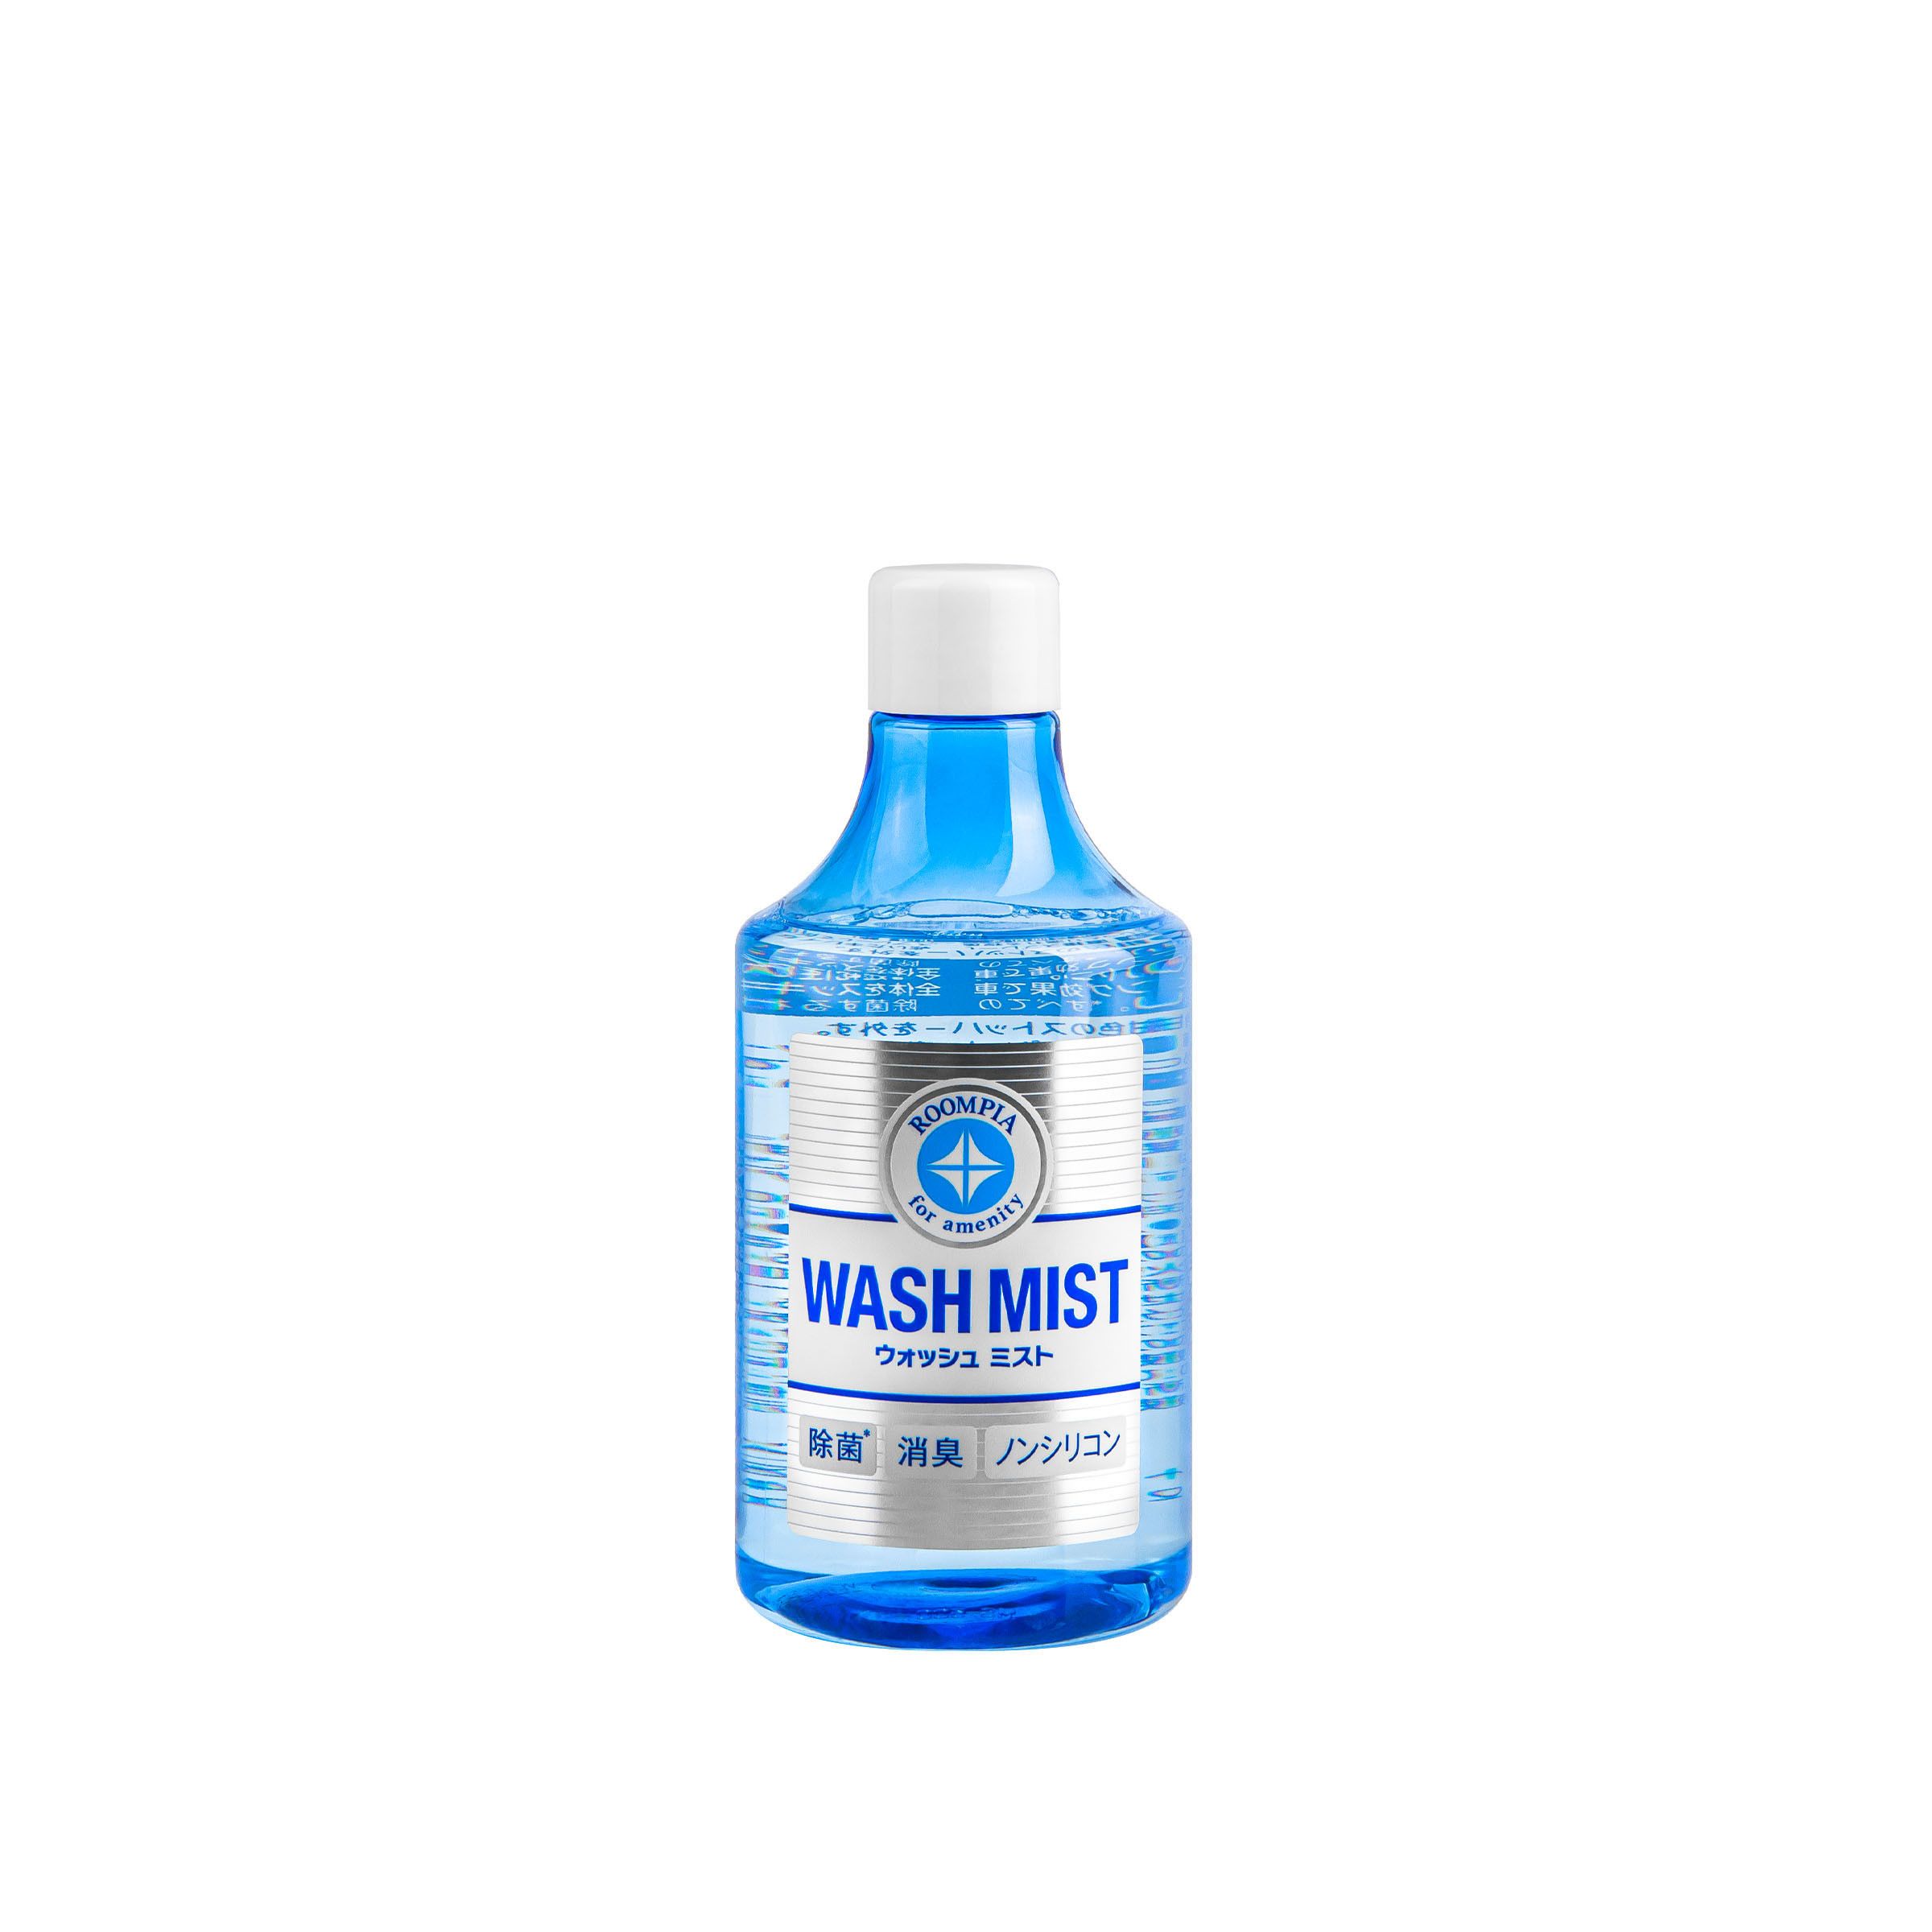 Wash Mist Refill, versatile interior cleaner, 300ml